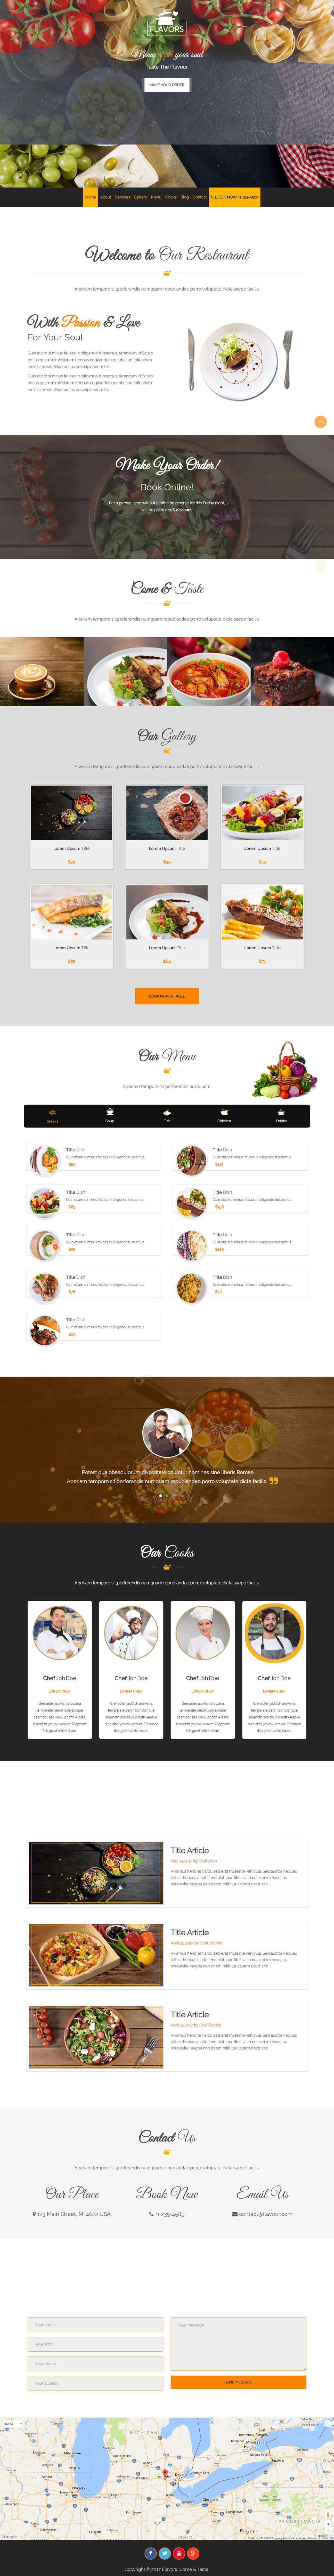 thiết kế website nhà hàng đông xuyên